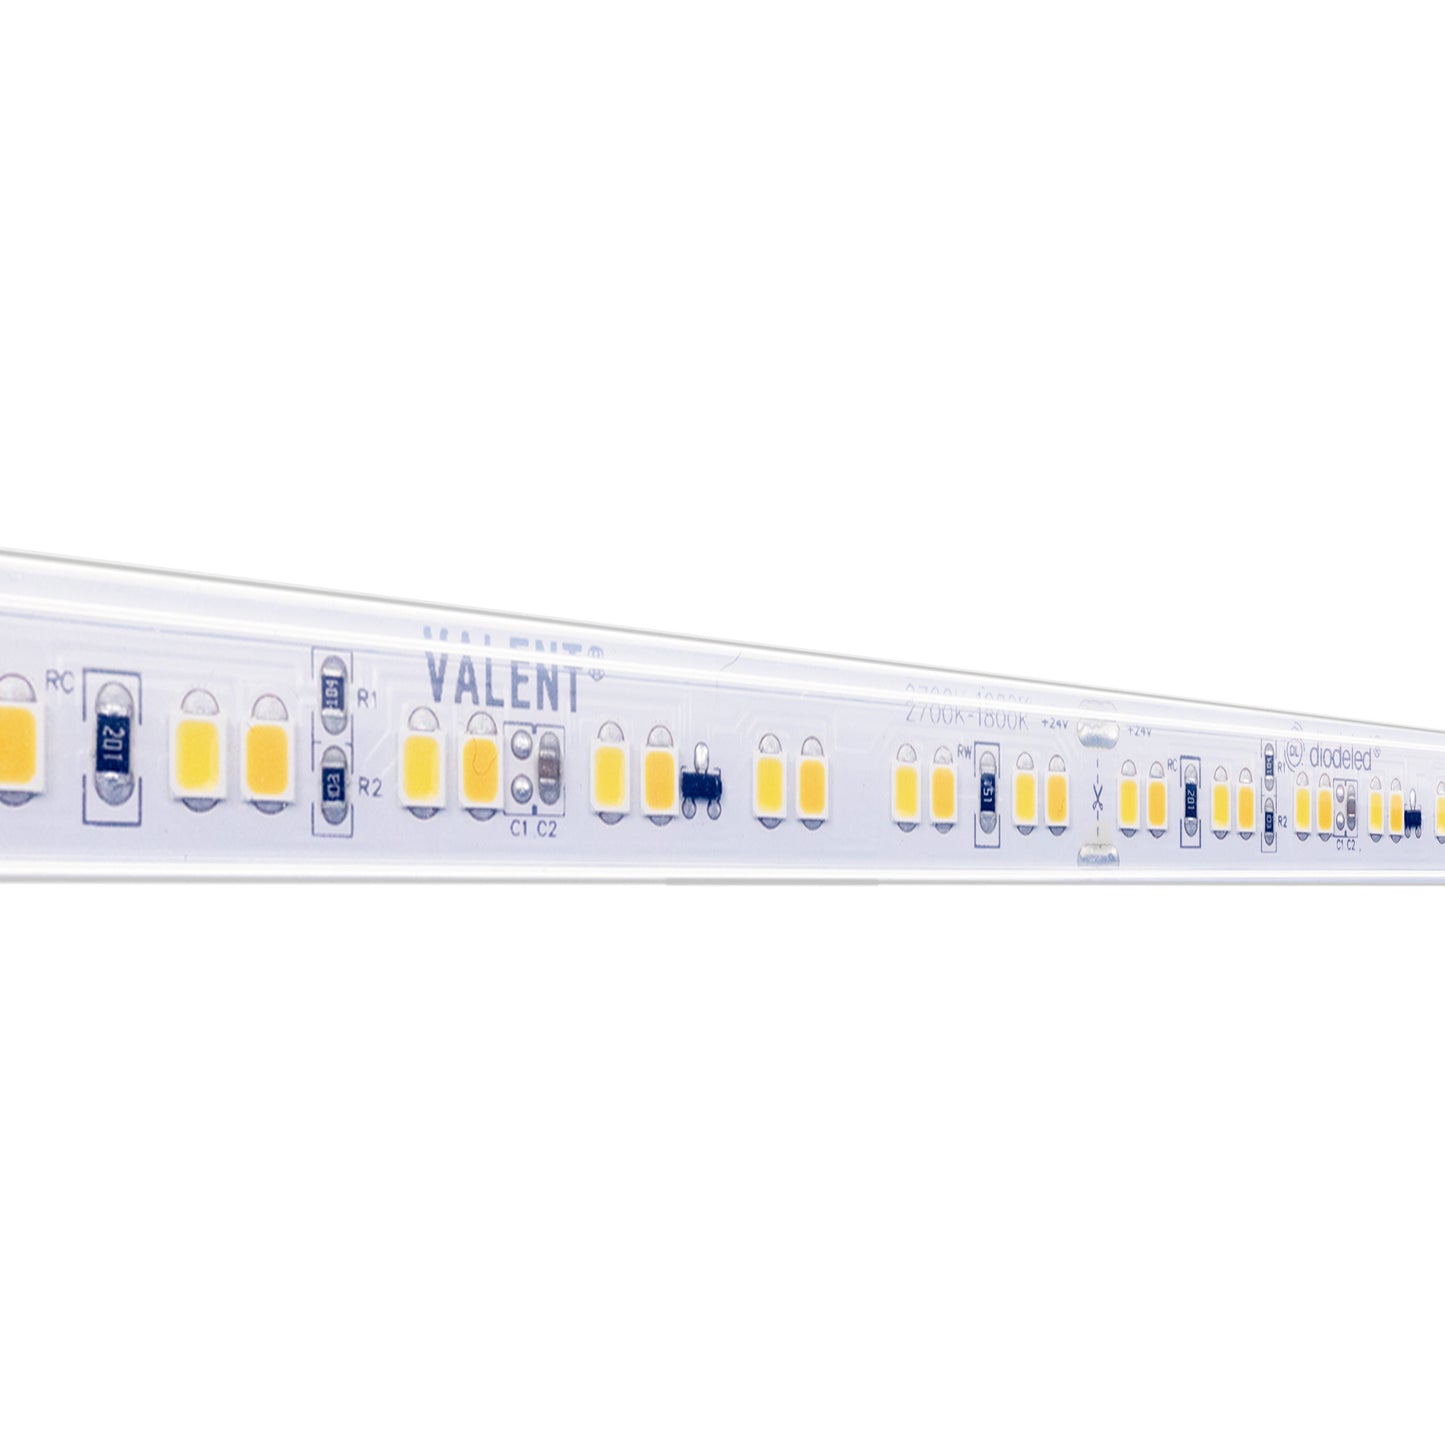 Diode LED DI-24V-VL4-WD2718-W100 100ft 4.4W/ft Valent Warm Dim Wet Location LED Tape Light 2700K-1800K 24V